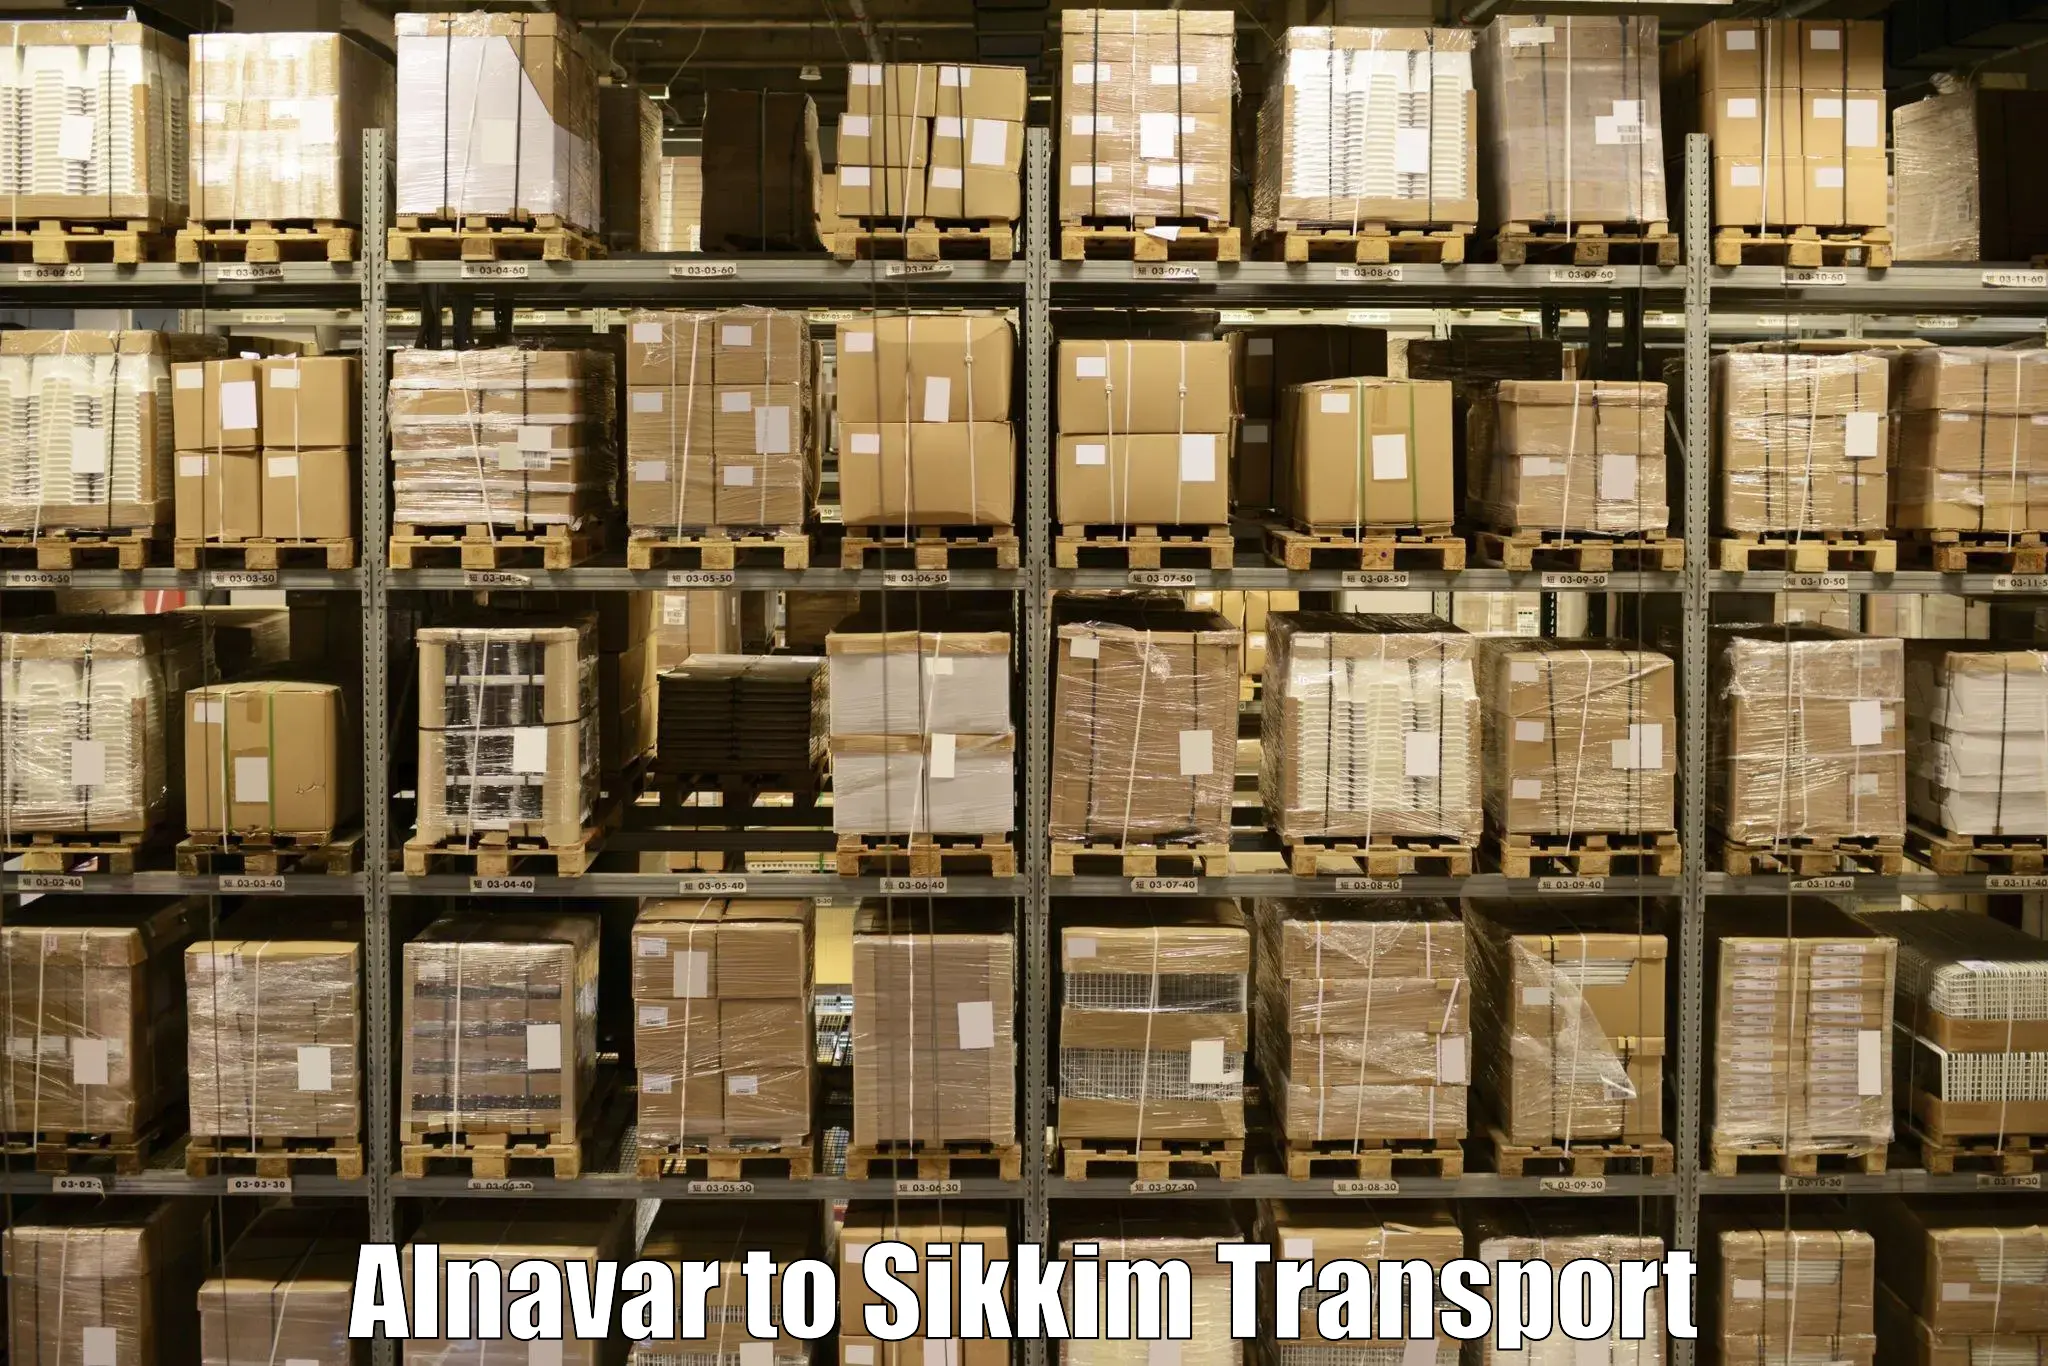 Shipping partner Alnavar to Ranipool